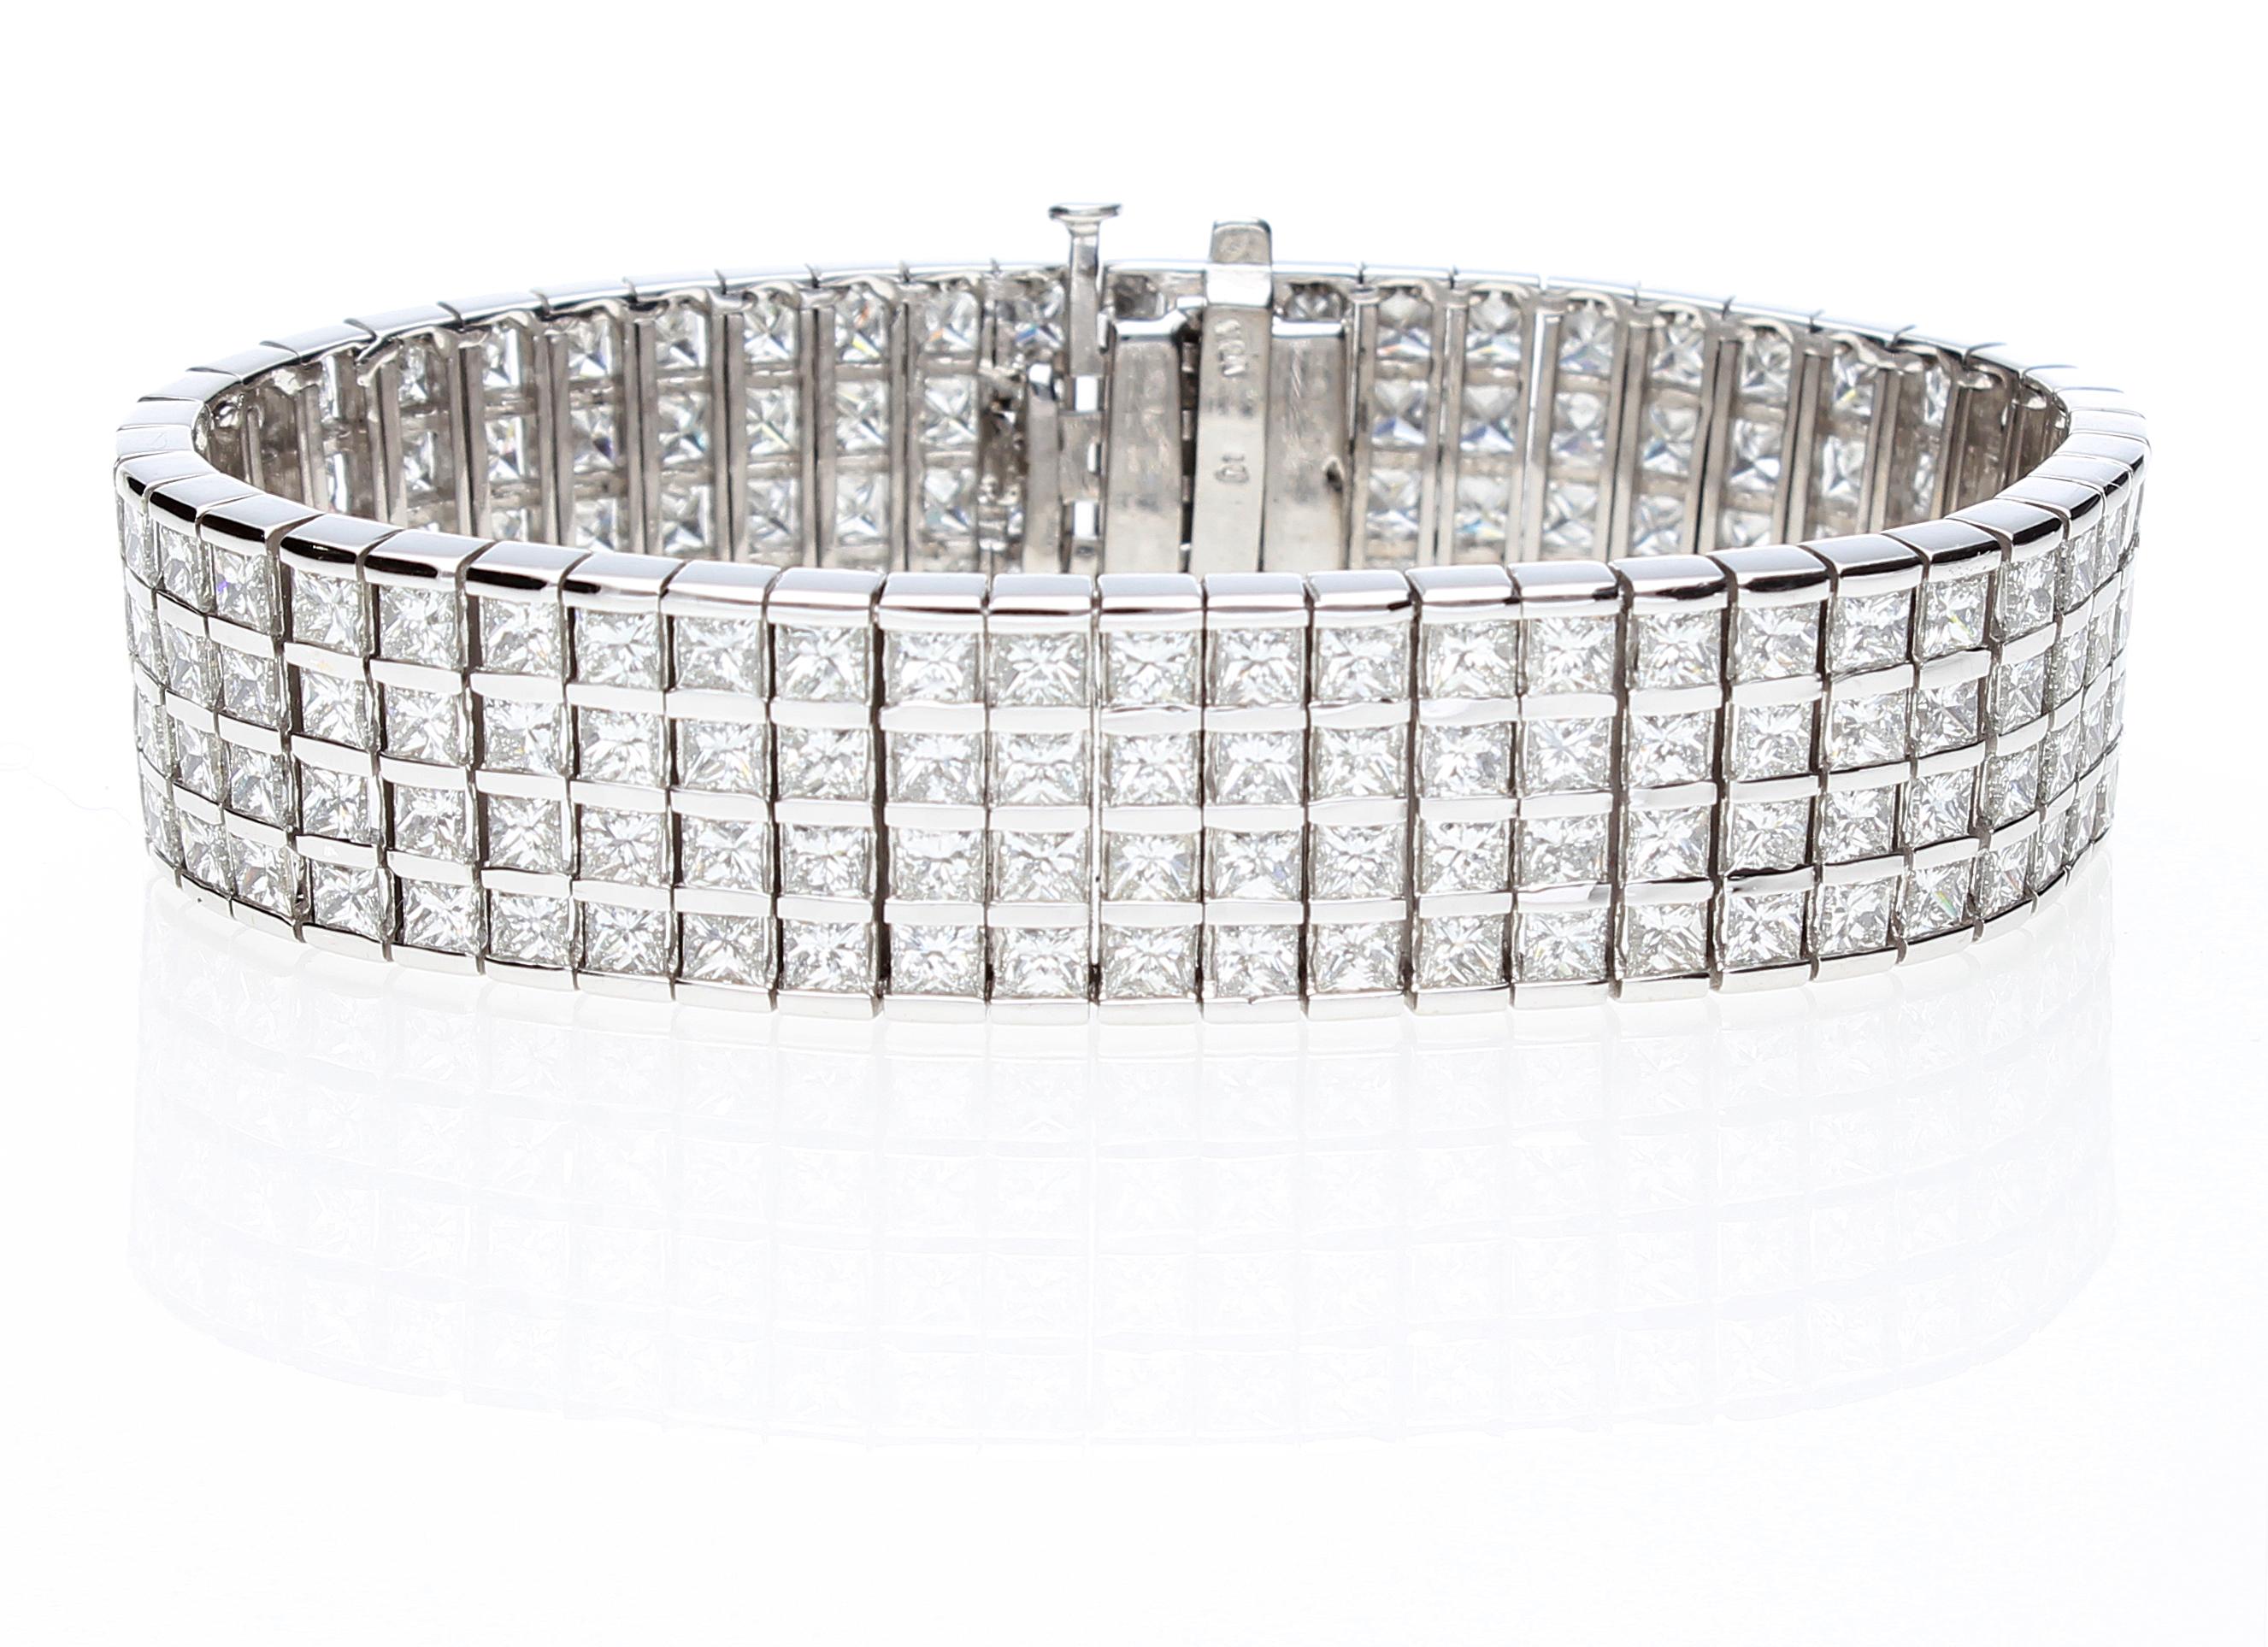 Bracelet semi-rigide avec 204 diamants taille princesse d'un poids total d'environ 20,00 ct.
Le bracelet est composé de 4 rangées de diamants taille princesse, chaque diamant étant serti entre deux rails en or blanc. 
Le bracelet est doté d'une